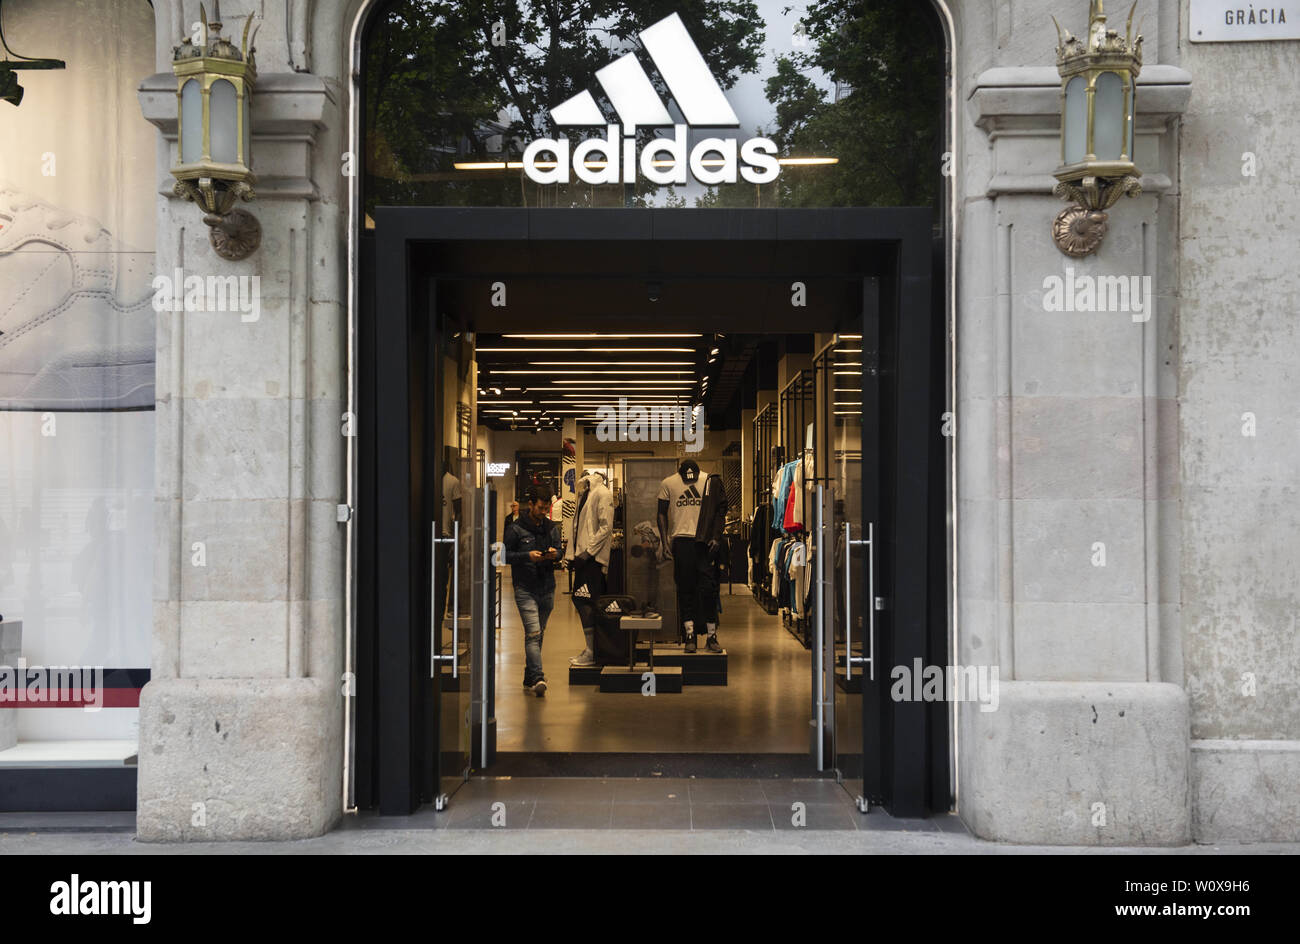 burbuja Alargar Todo el mundo Mayo 29, 2019 - España - Un cliente sale de una multinacional alemana de  ropa deportiva Adidas store